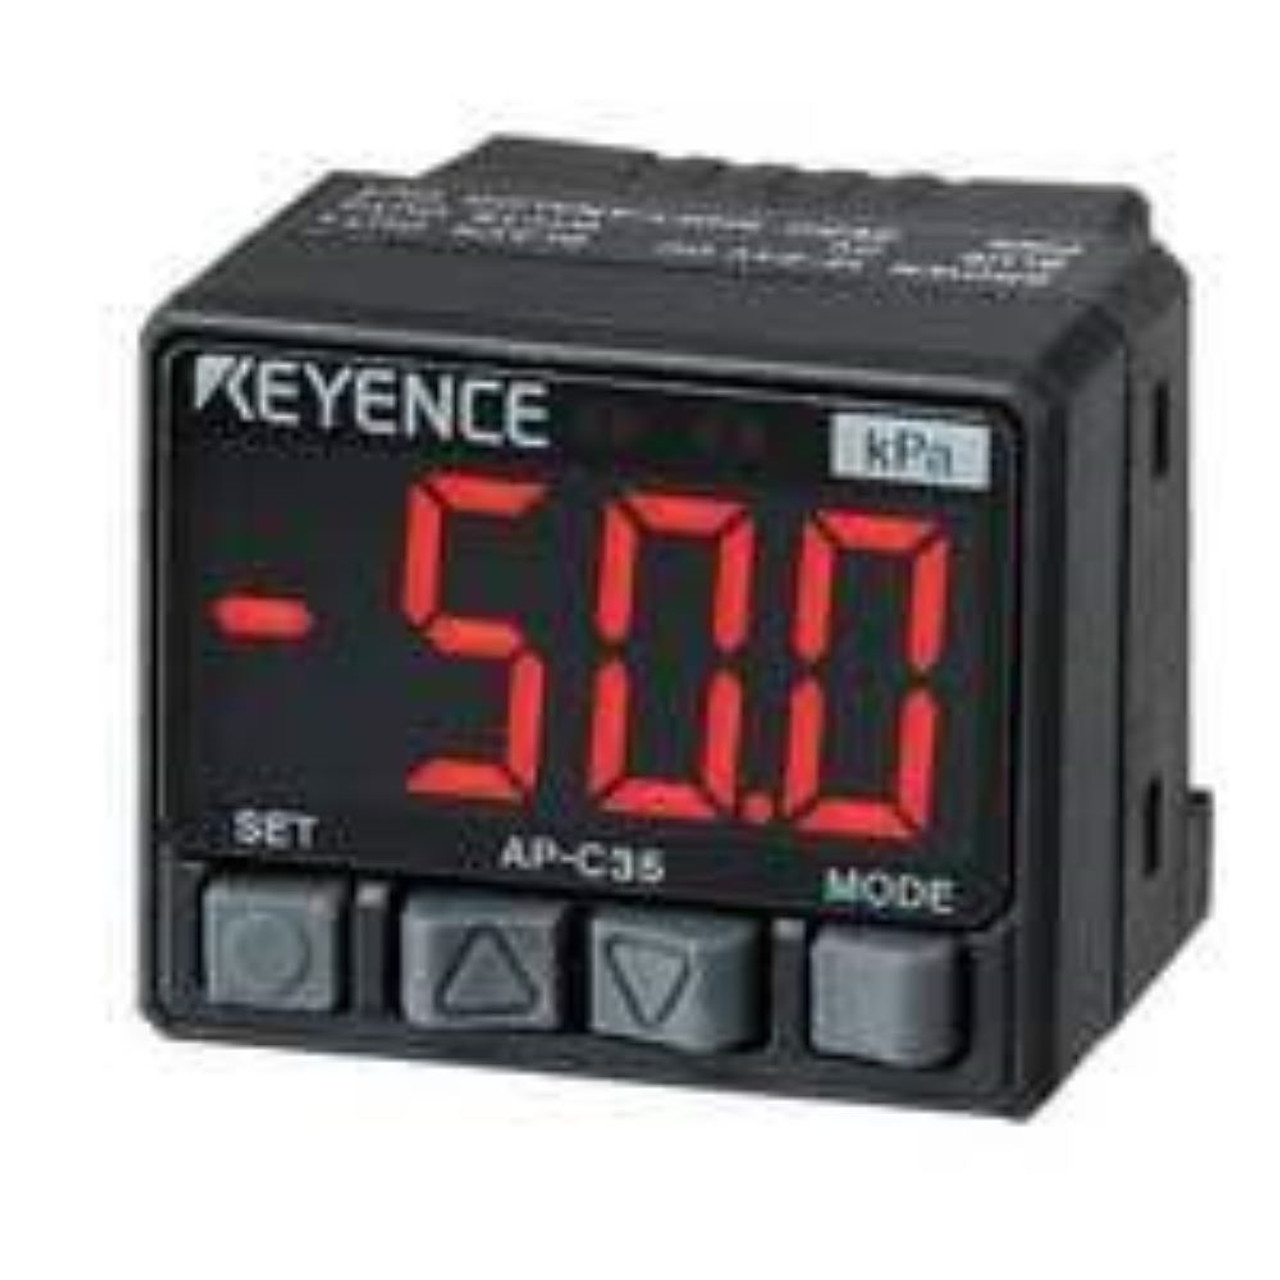 Keyence AP-C35 Ultra-Compact Digital Pressure Sensor, Main Unit [New]